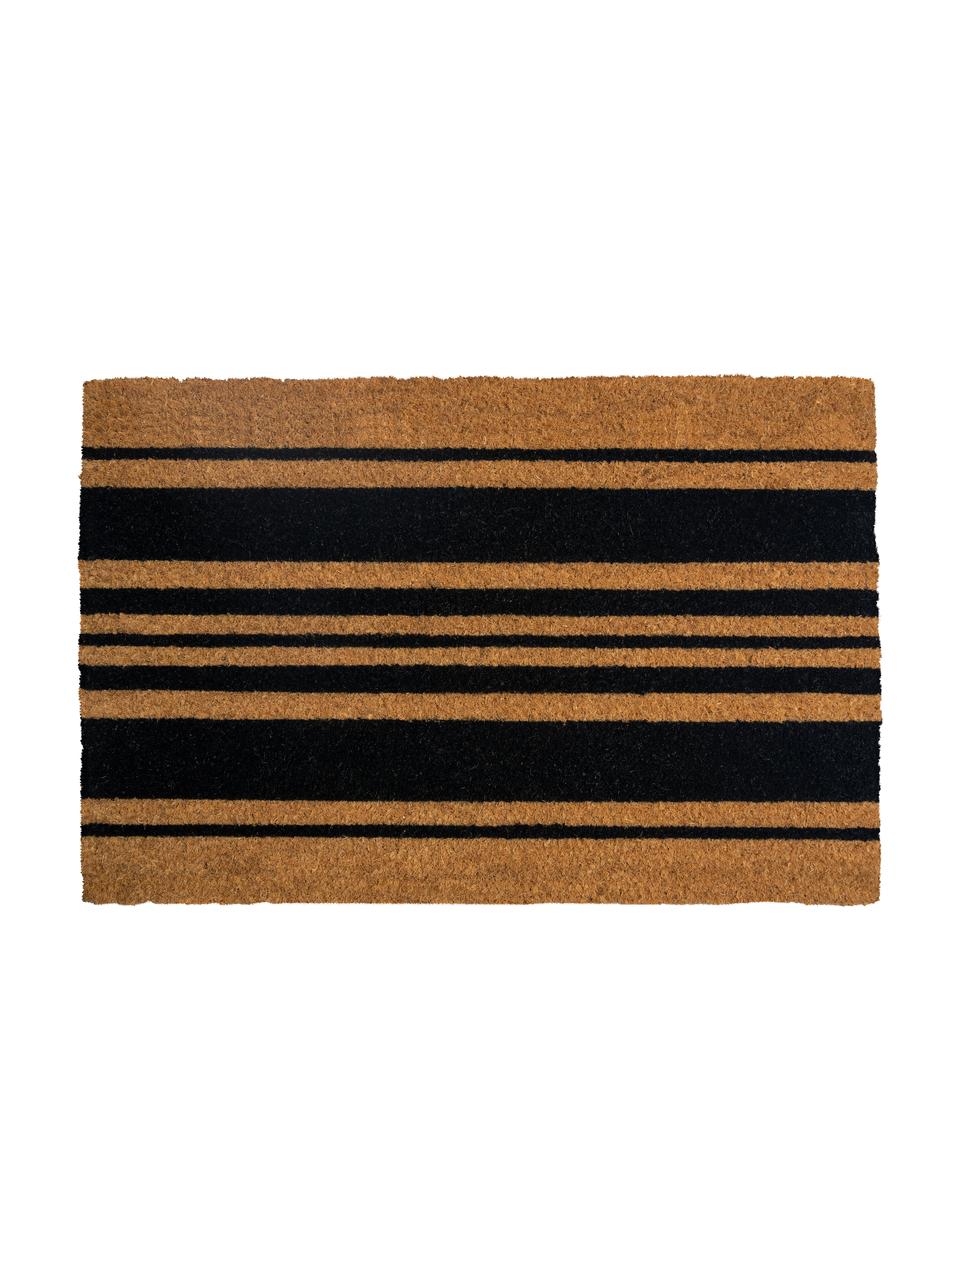 Fußmatte Bold Stripes, Kokosfaser, Schwarz, Beige, 45 x 75 cm